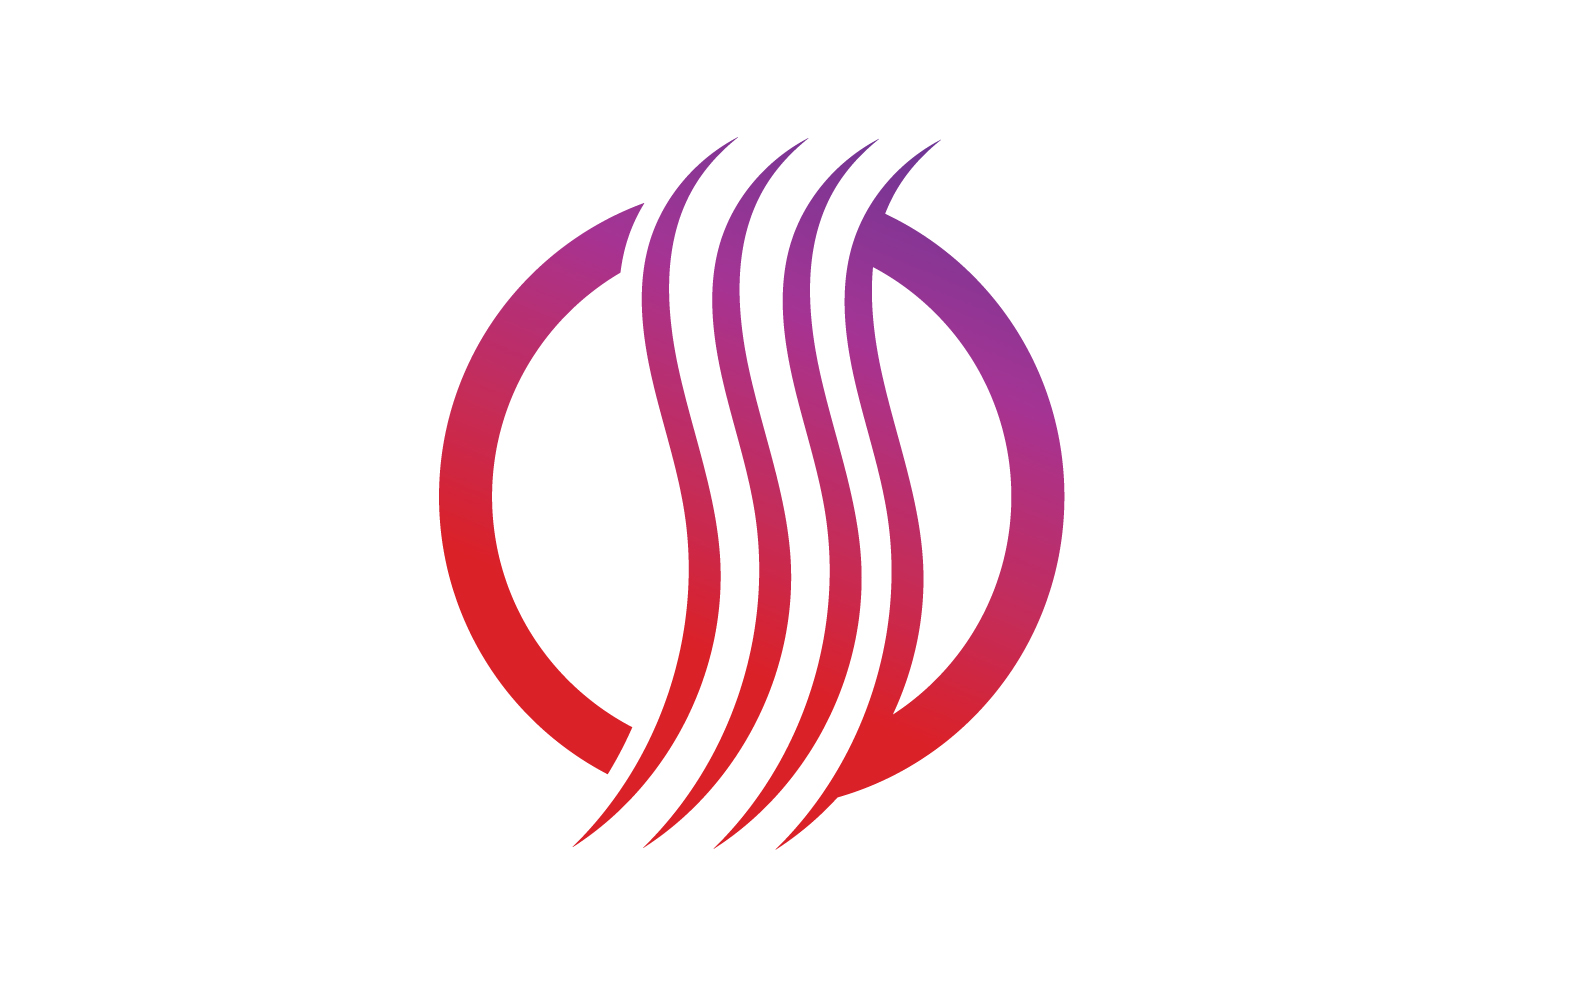 Hair line wave design  logo and symbol vector v34